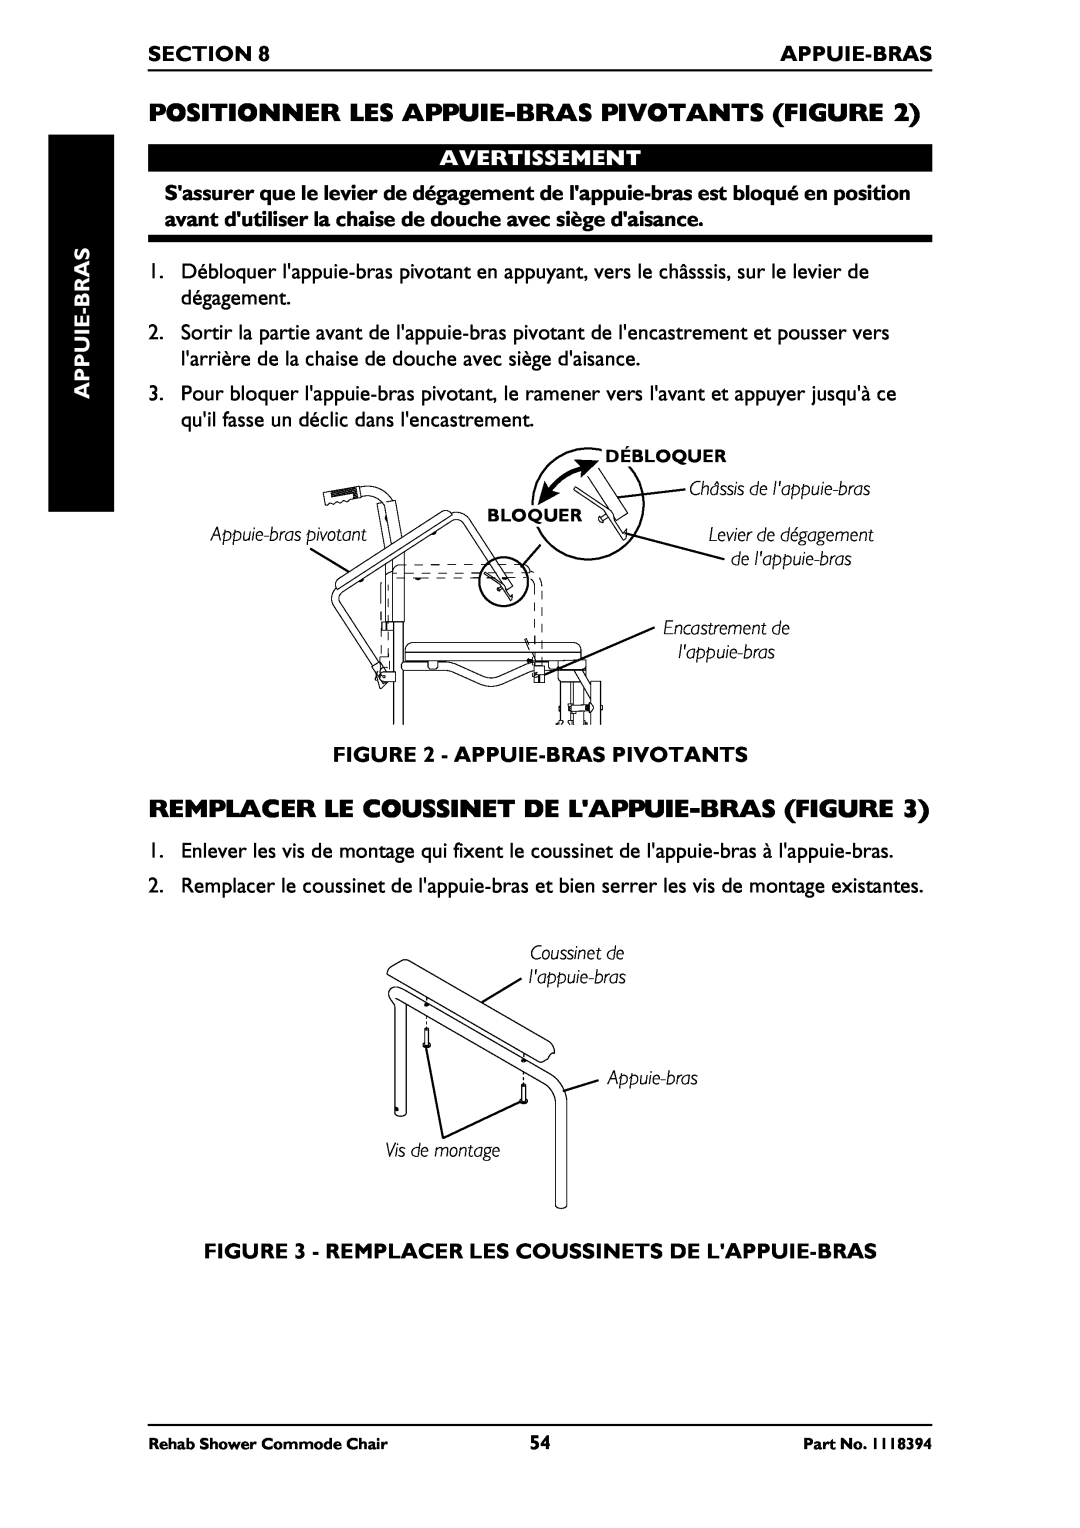 Invacare 6795, 6895 Positionner Les Appuie-Bras Pivotants Figure, Remplacer Le Coussinet De Lappuie-Bras Figure, Section 